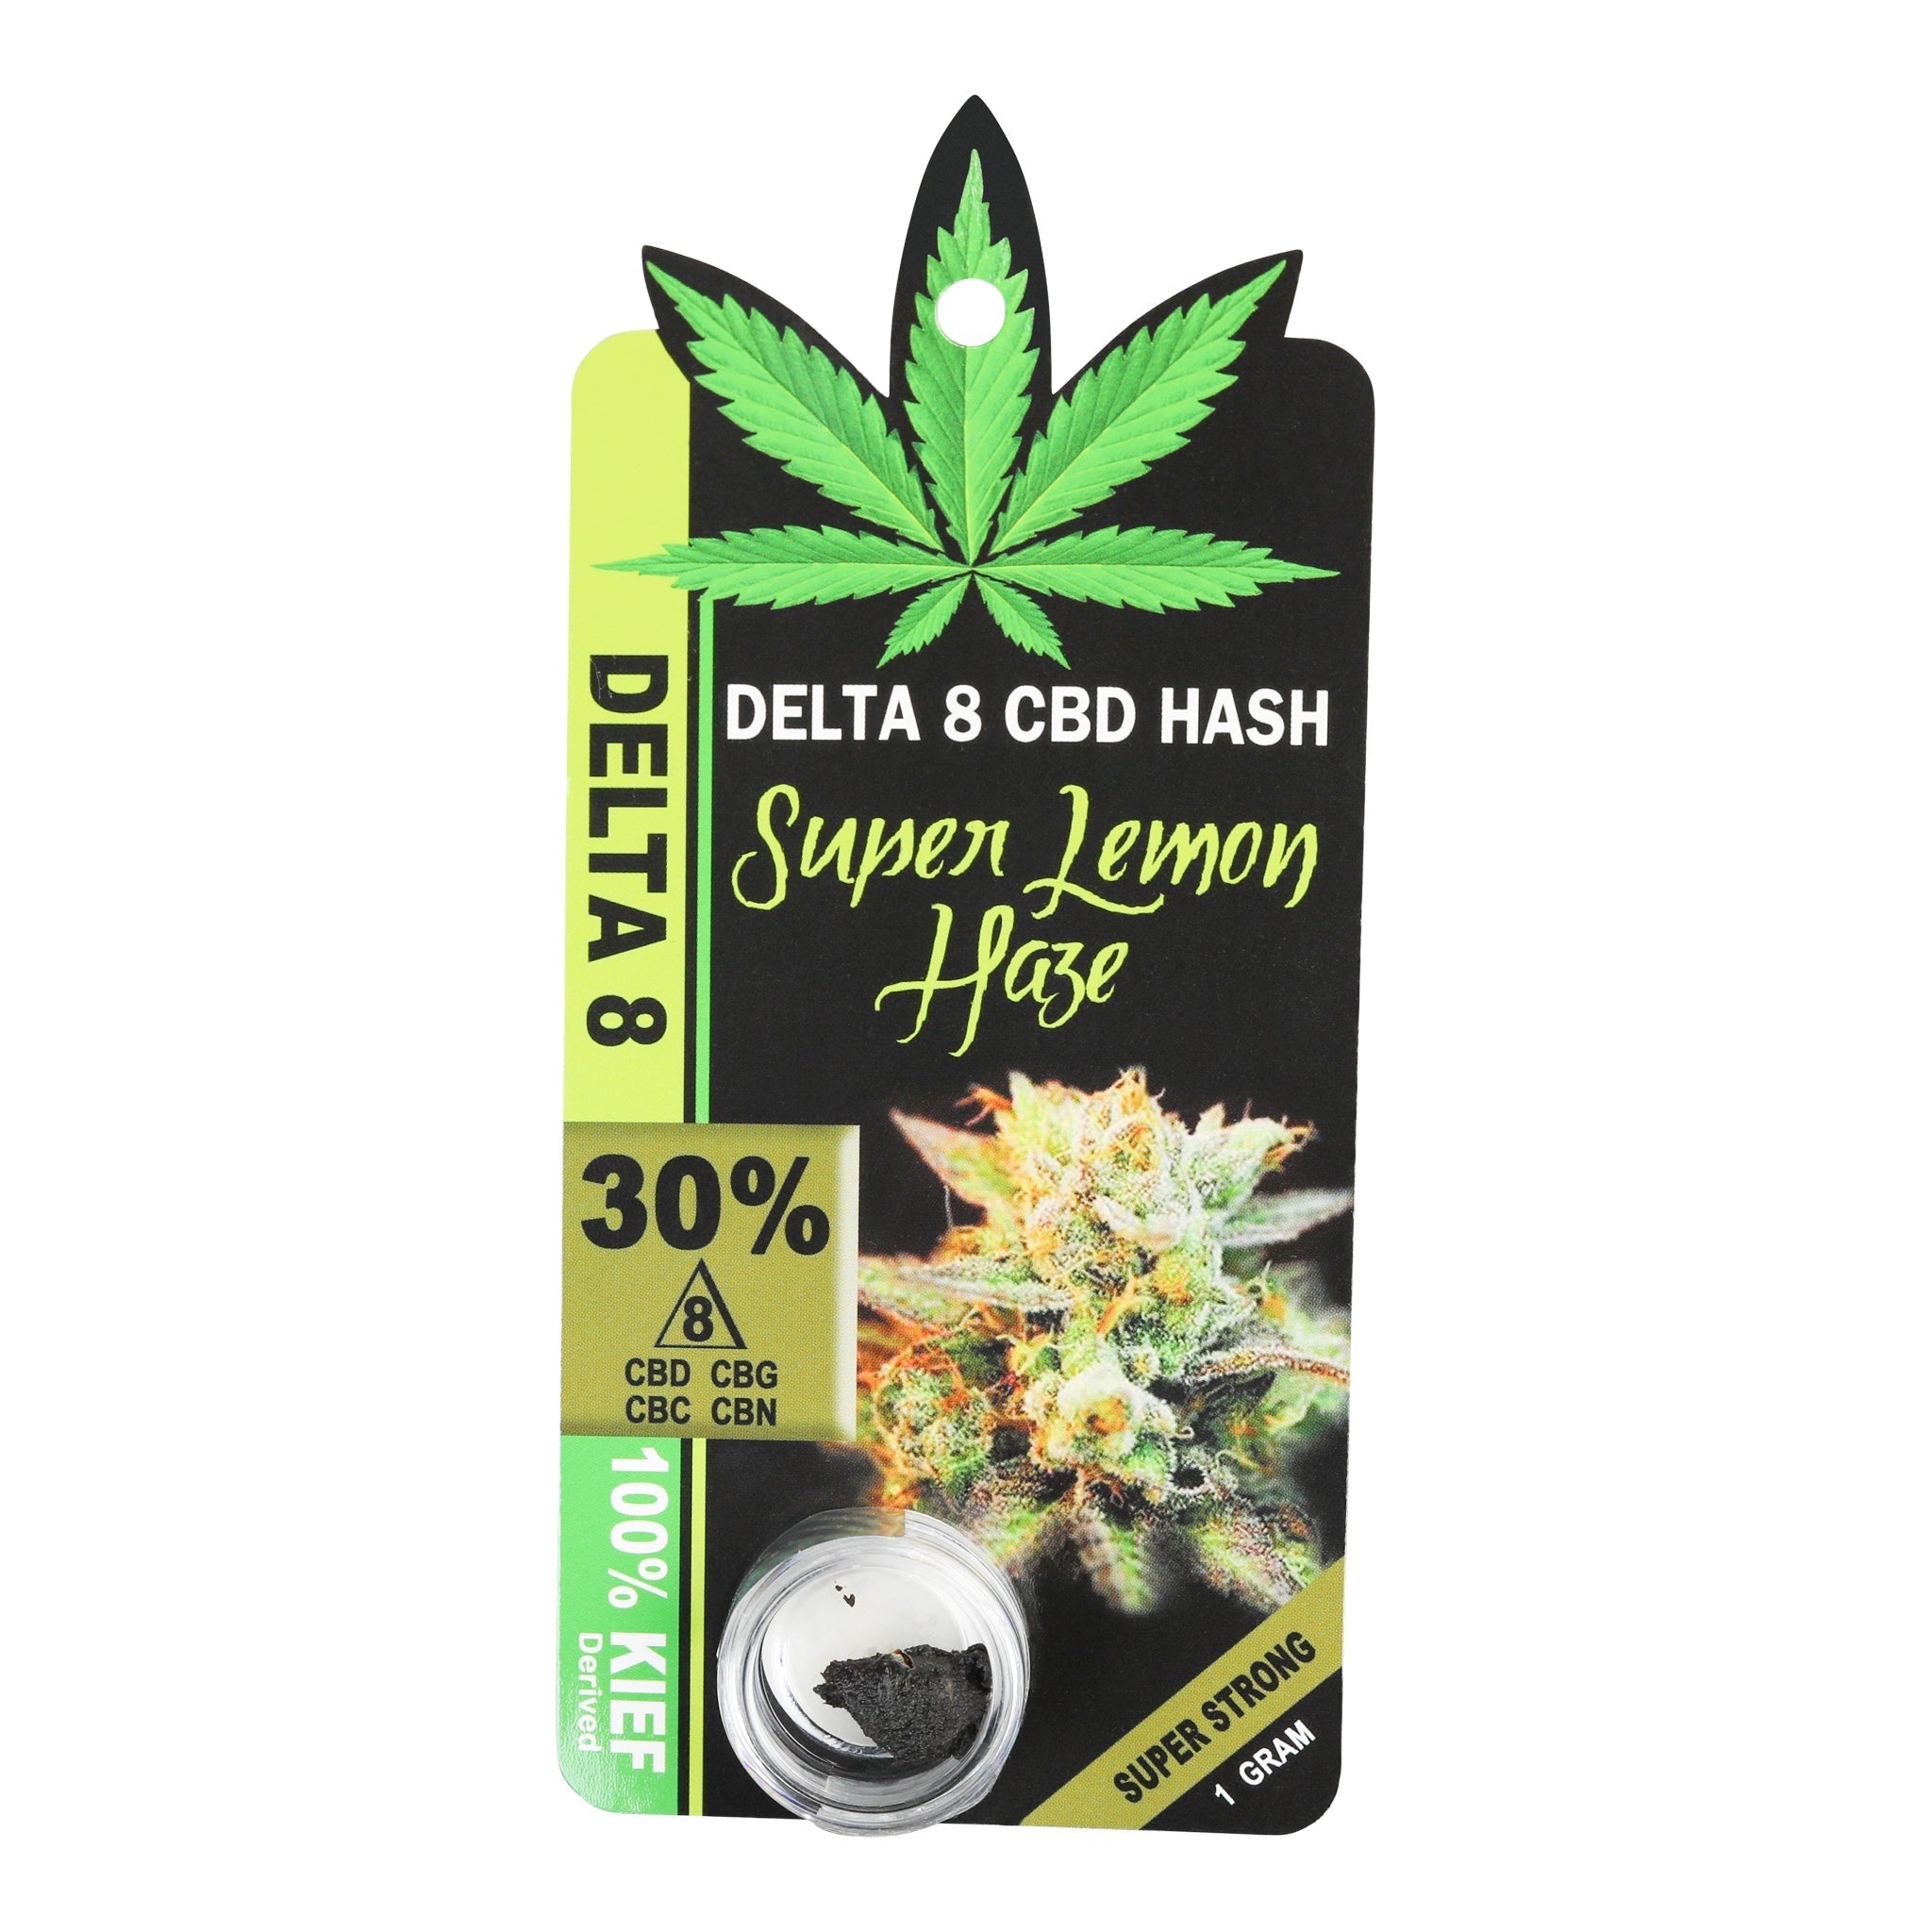 Palm Treez Co Delta 8 Black Hash 1000mg / Super Lemon Haze